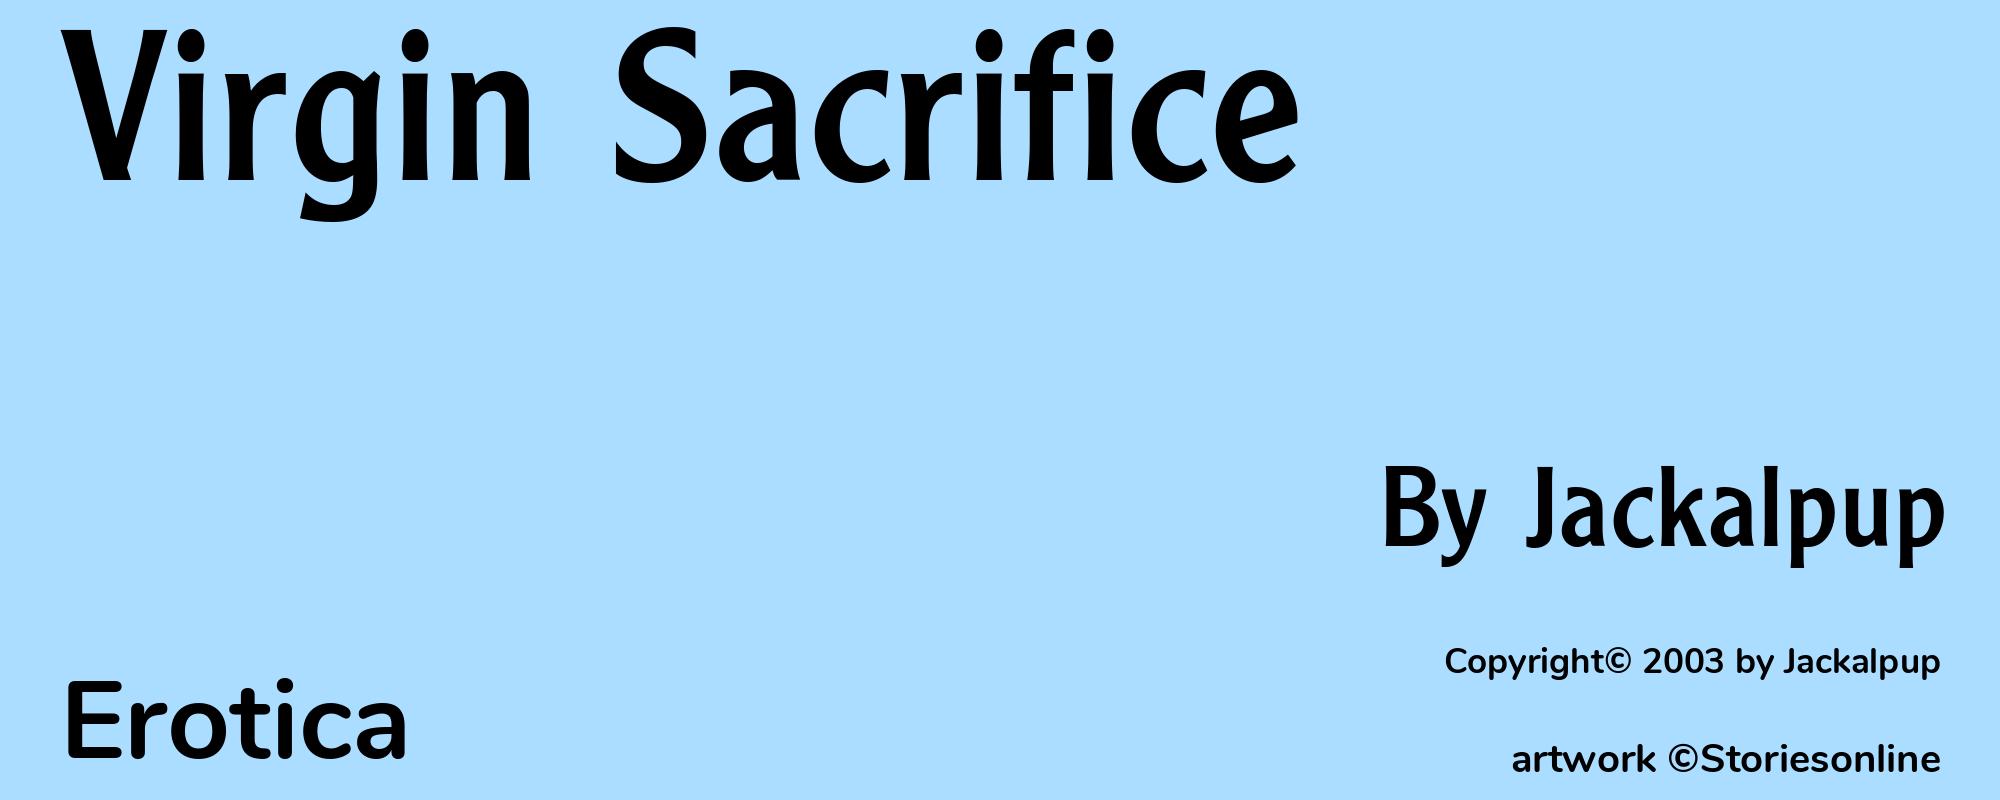 Virgin Sacrifice - Cover